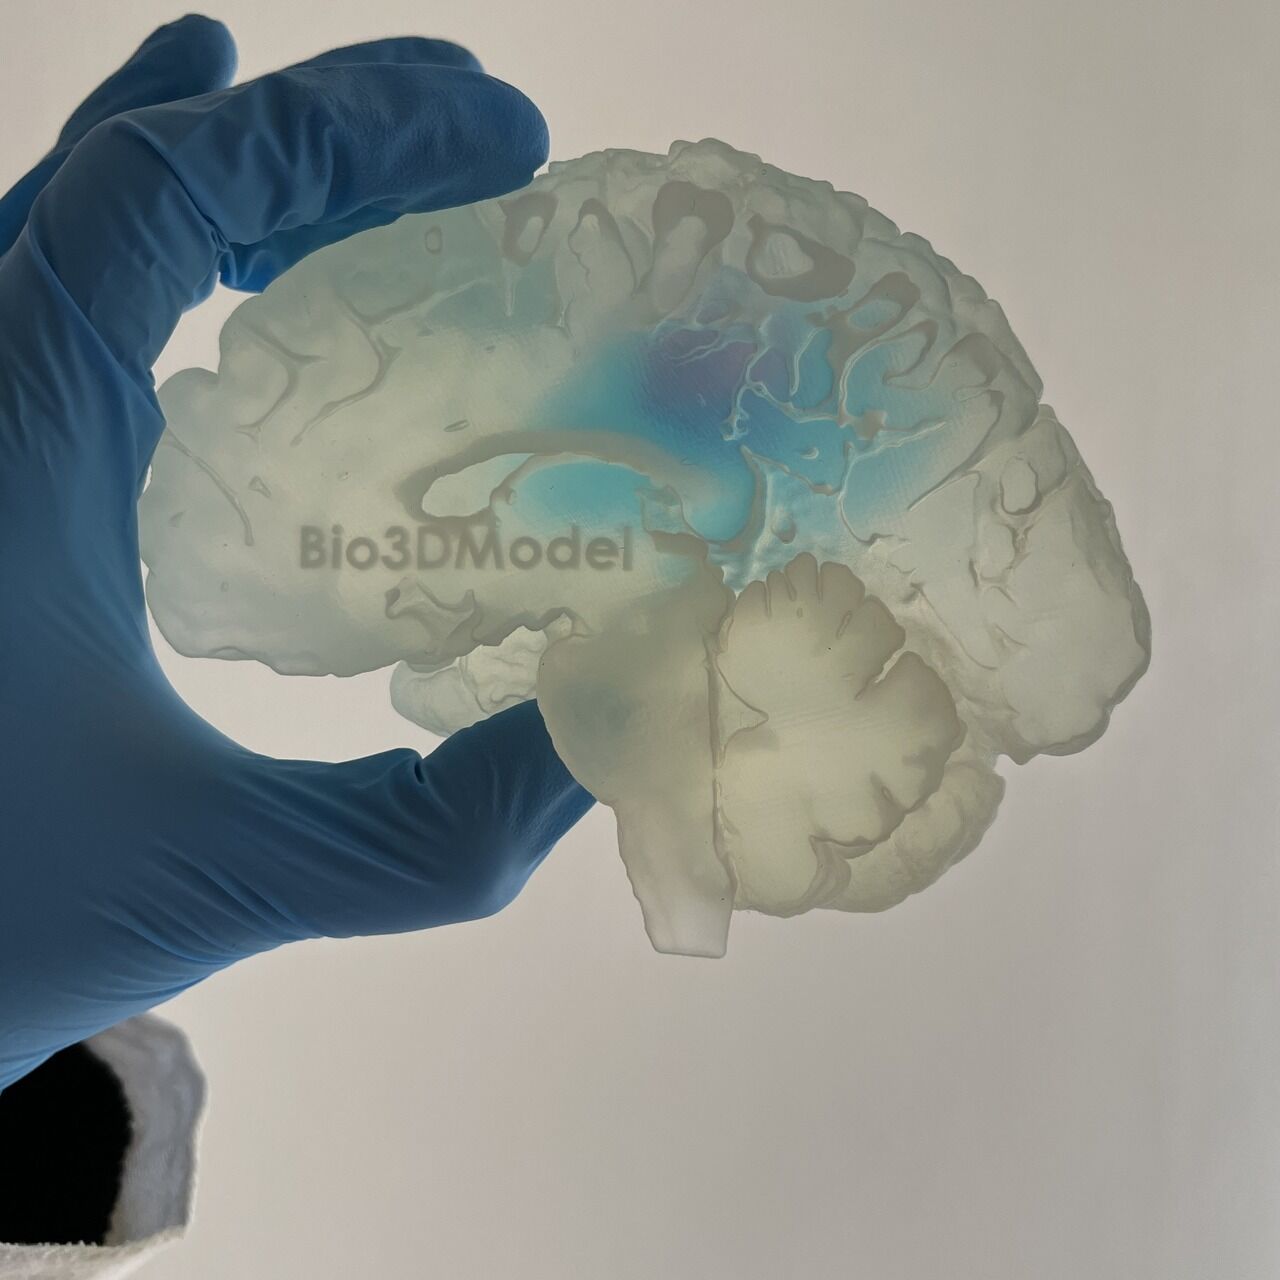 Cervello umano: la riproduzione di un cervello affetto da metastasi e stampato in 3D dalla società italiana Bio3DModel